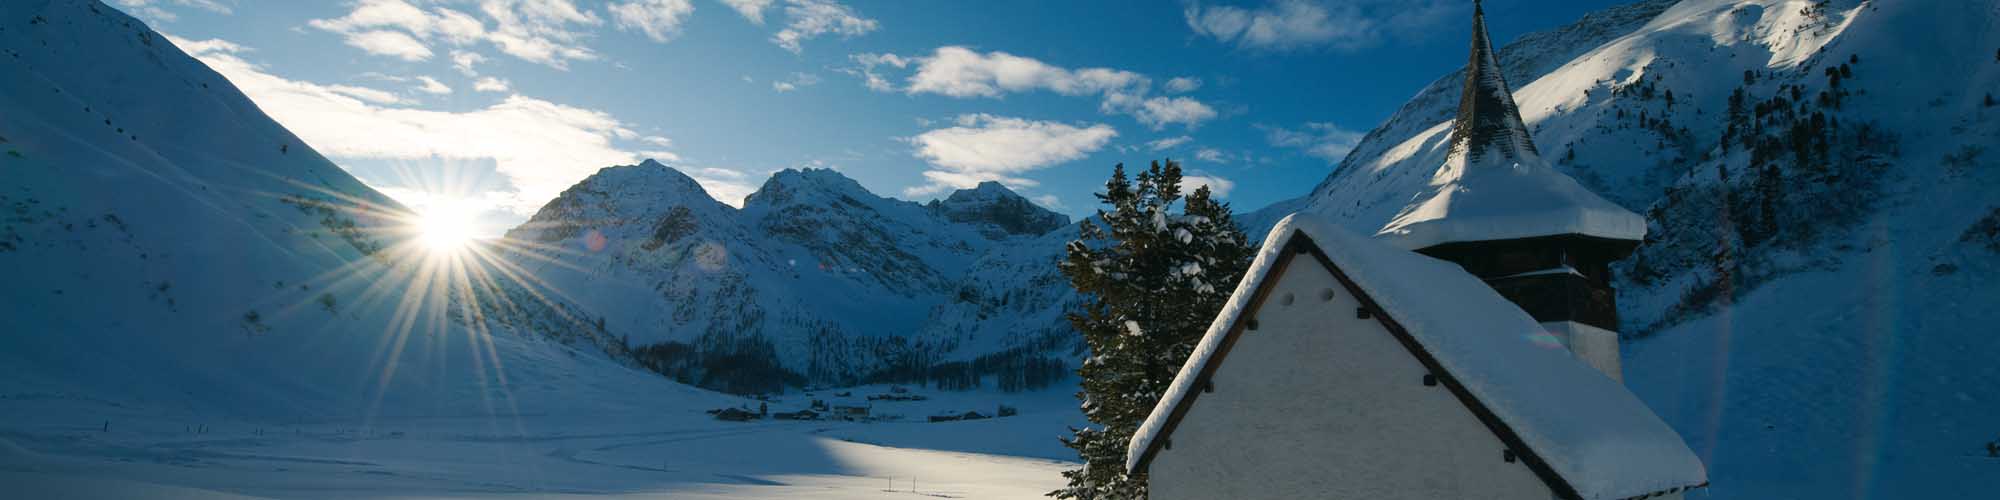 Hotel Davos - 46 km - Skating Loipen